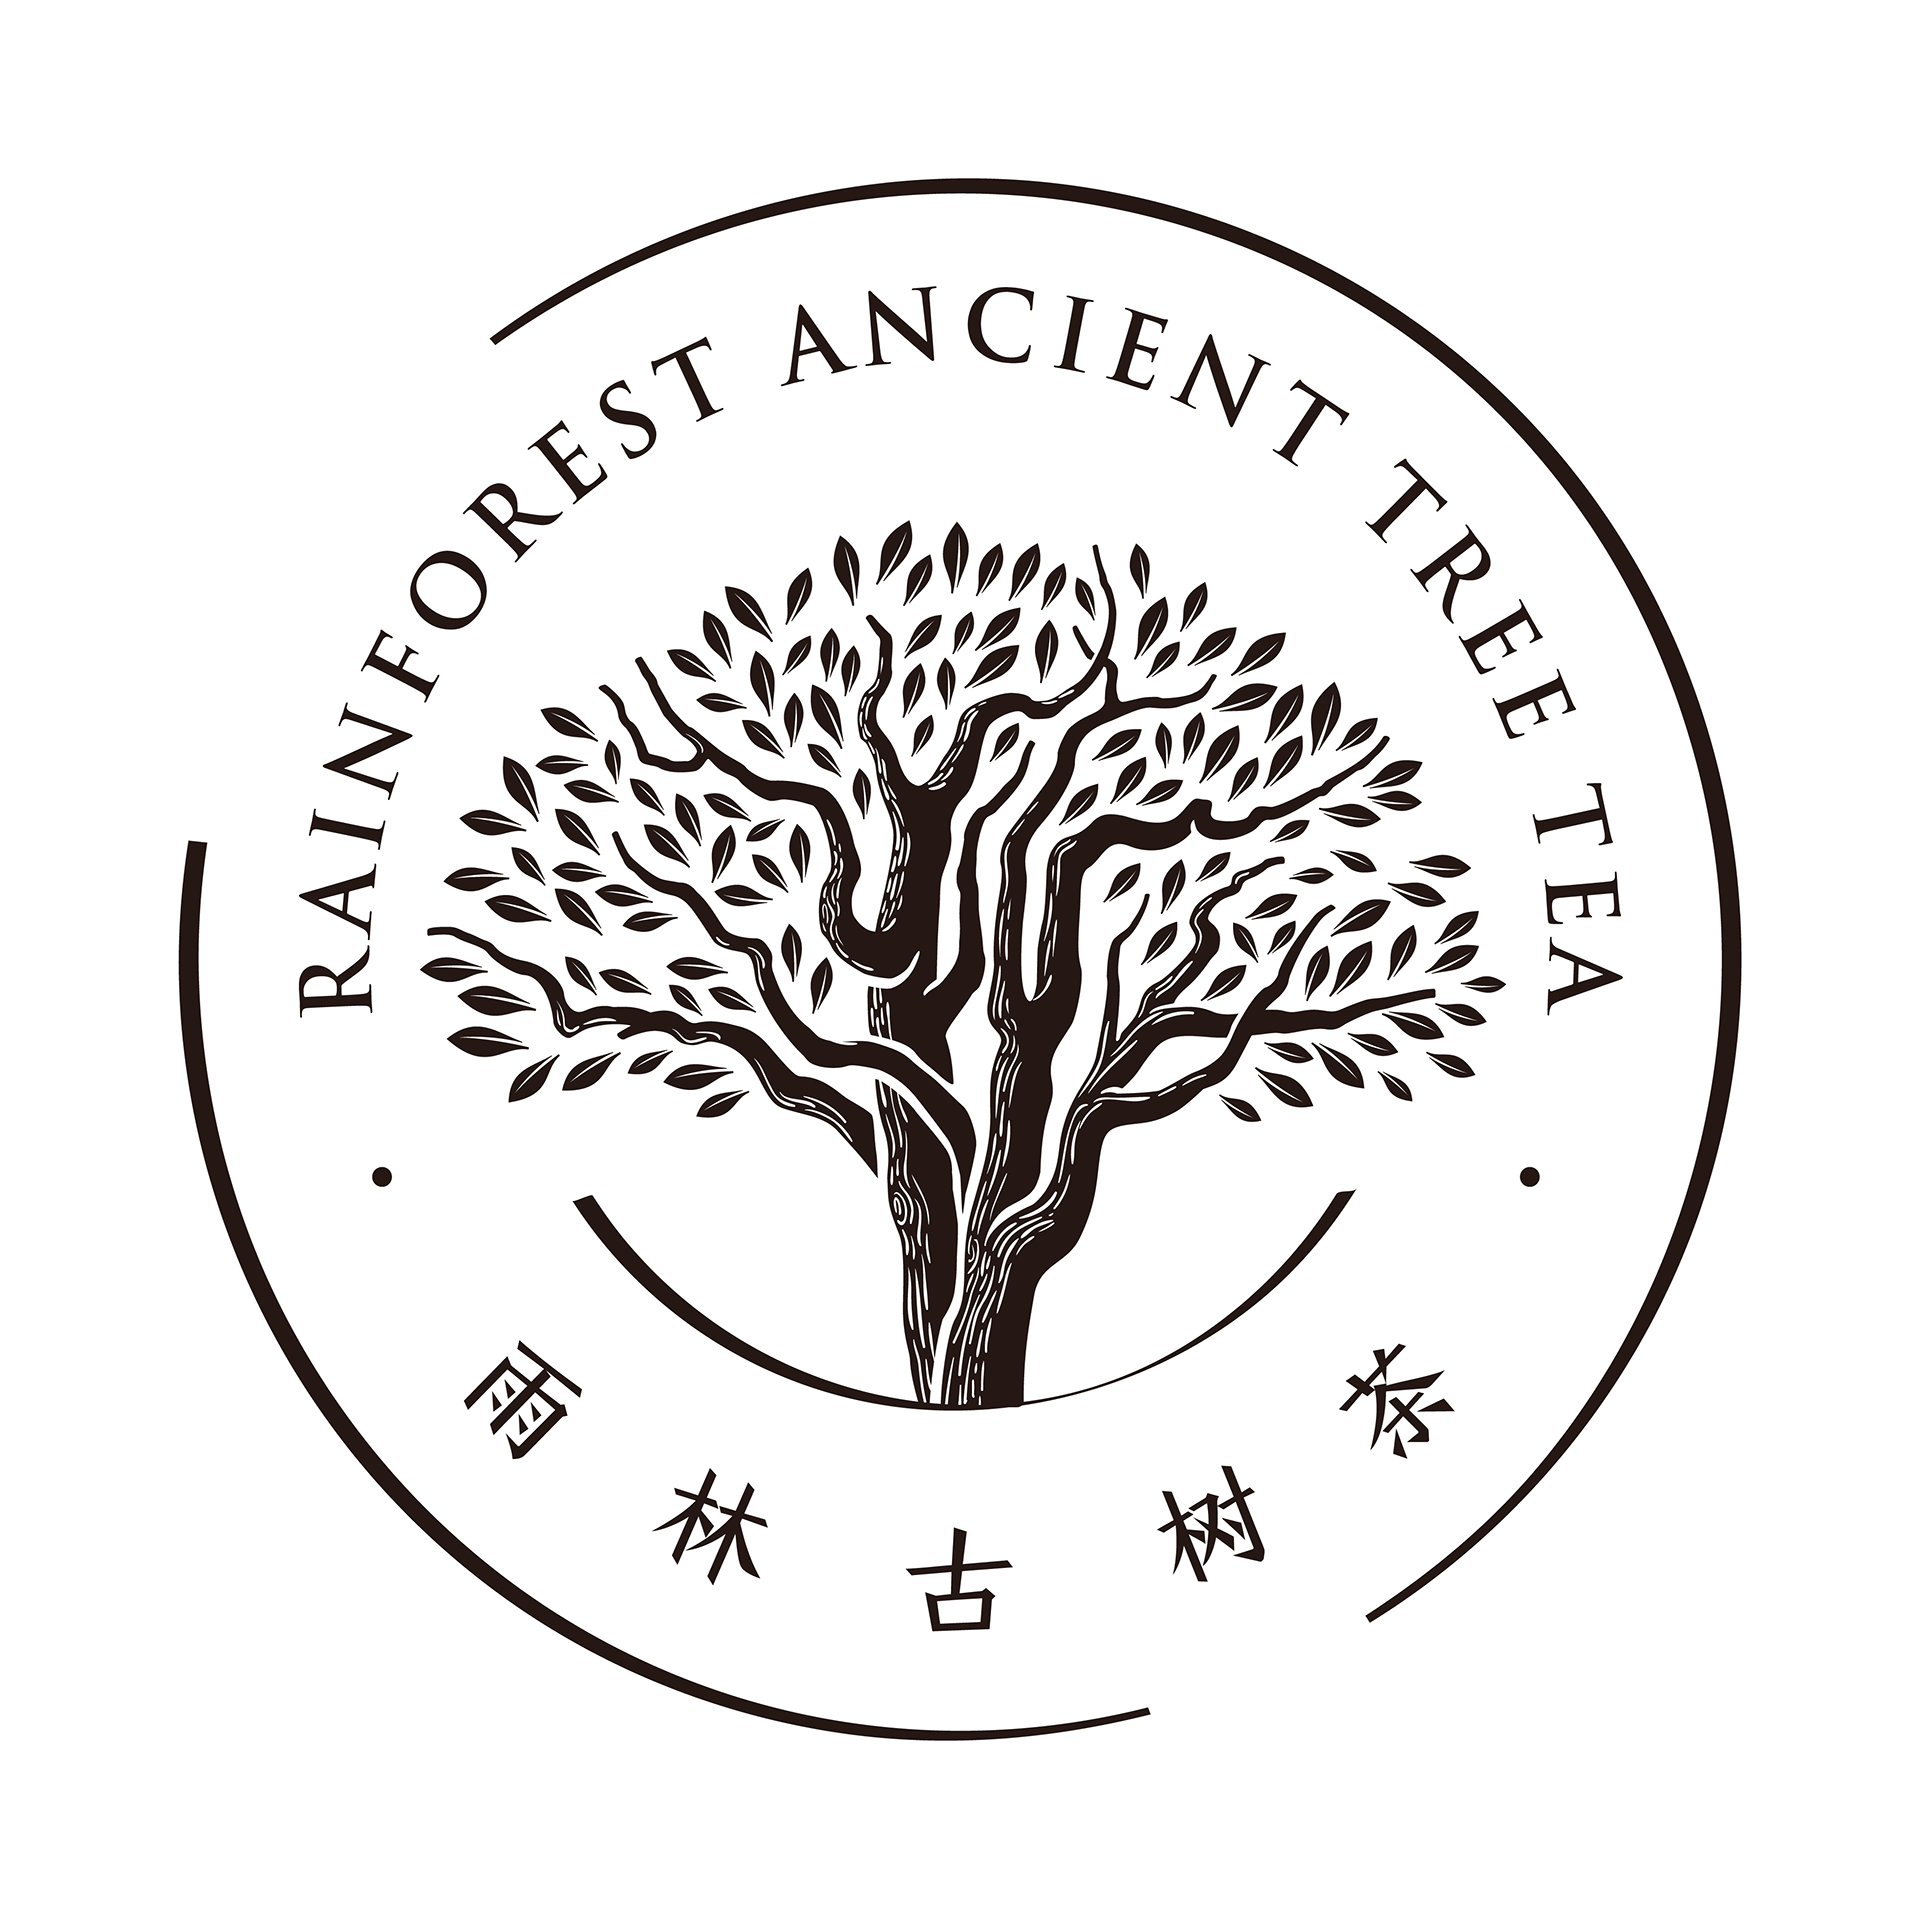 雨林古树茶logo图片图片